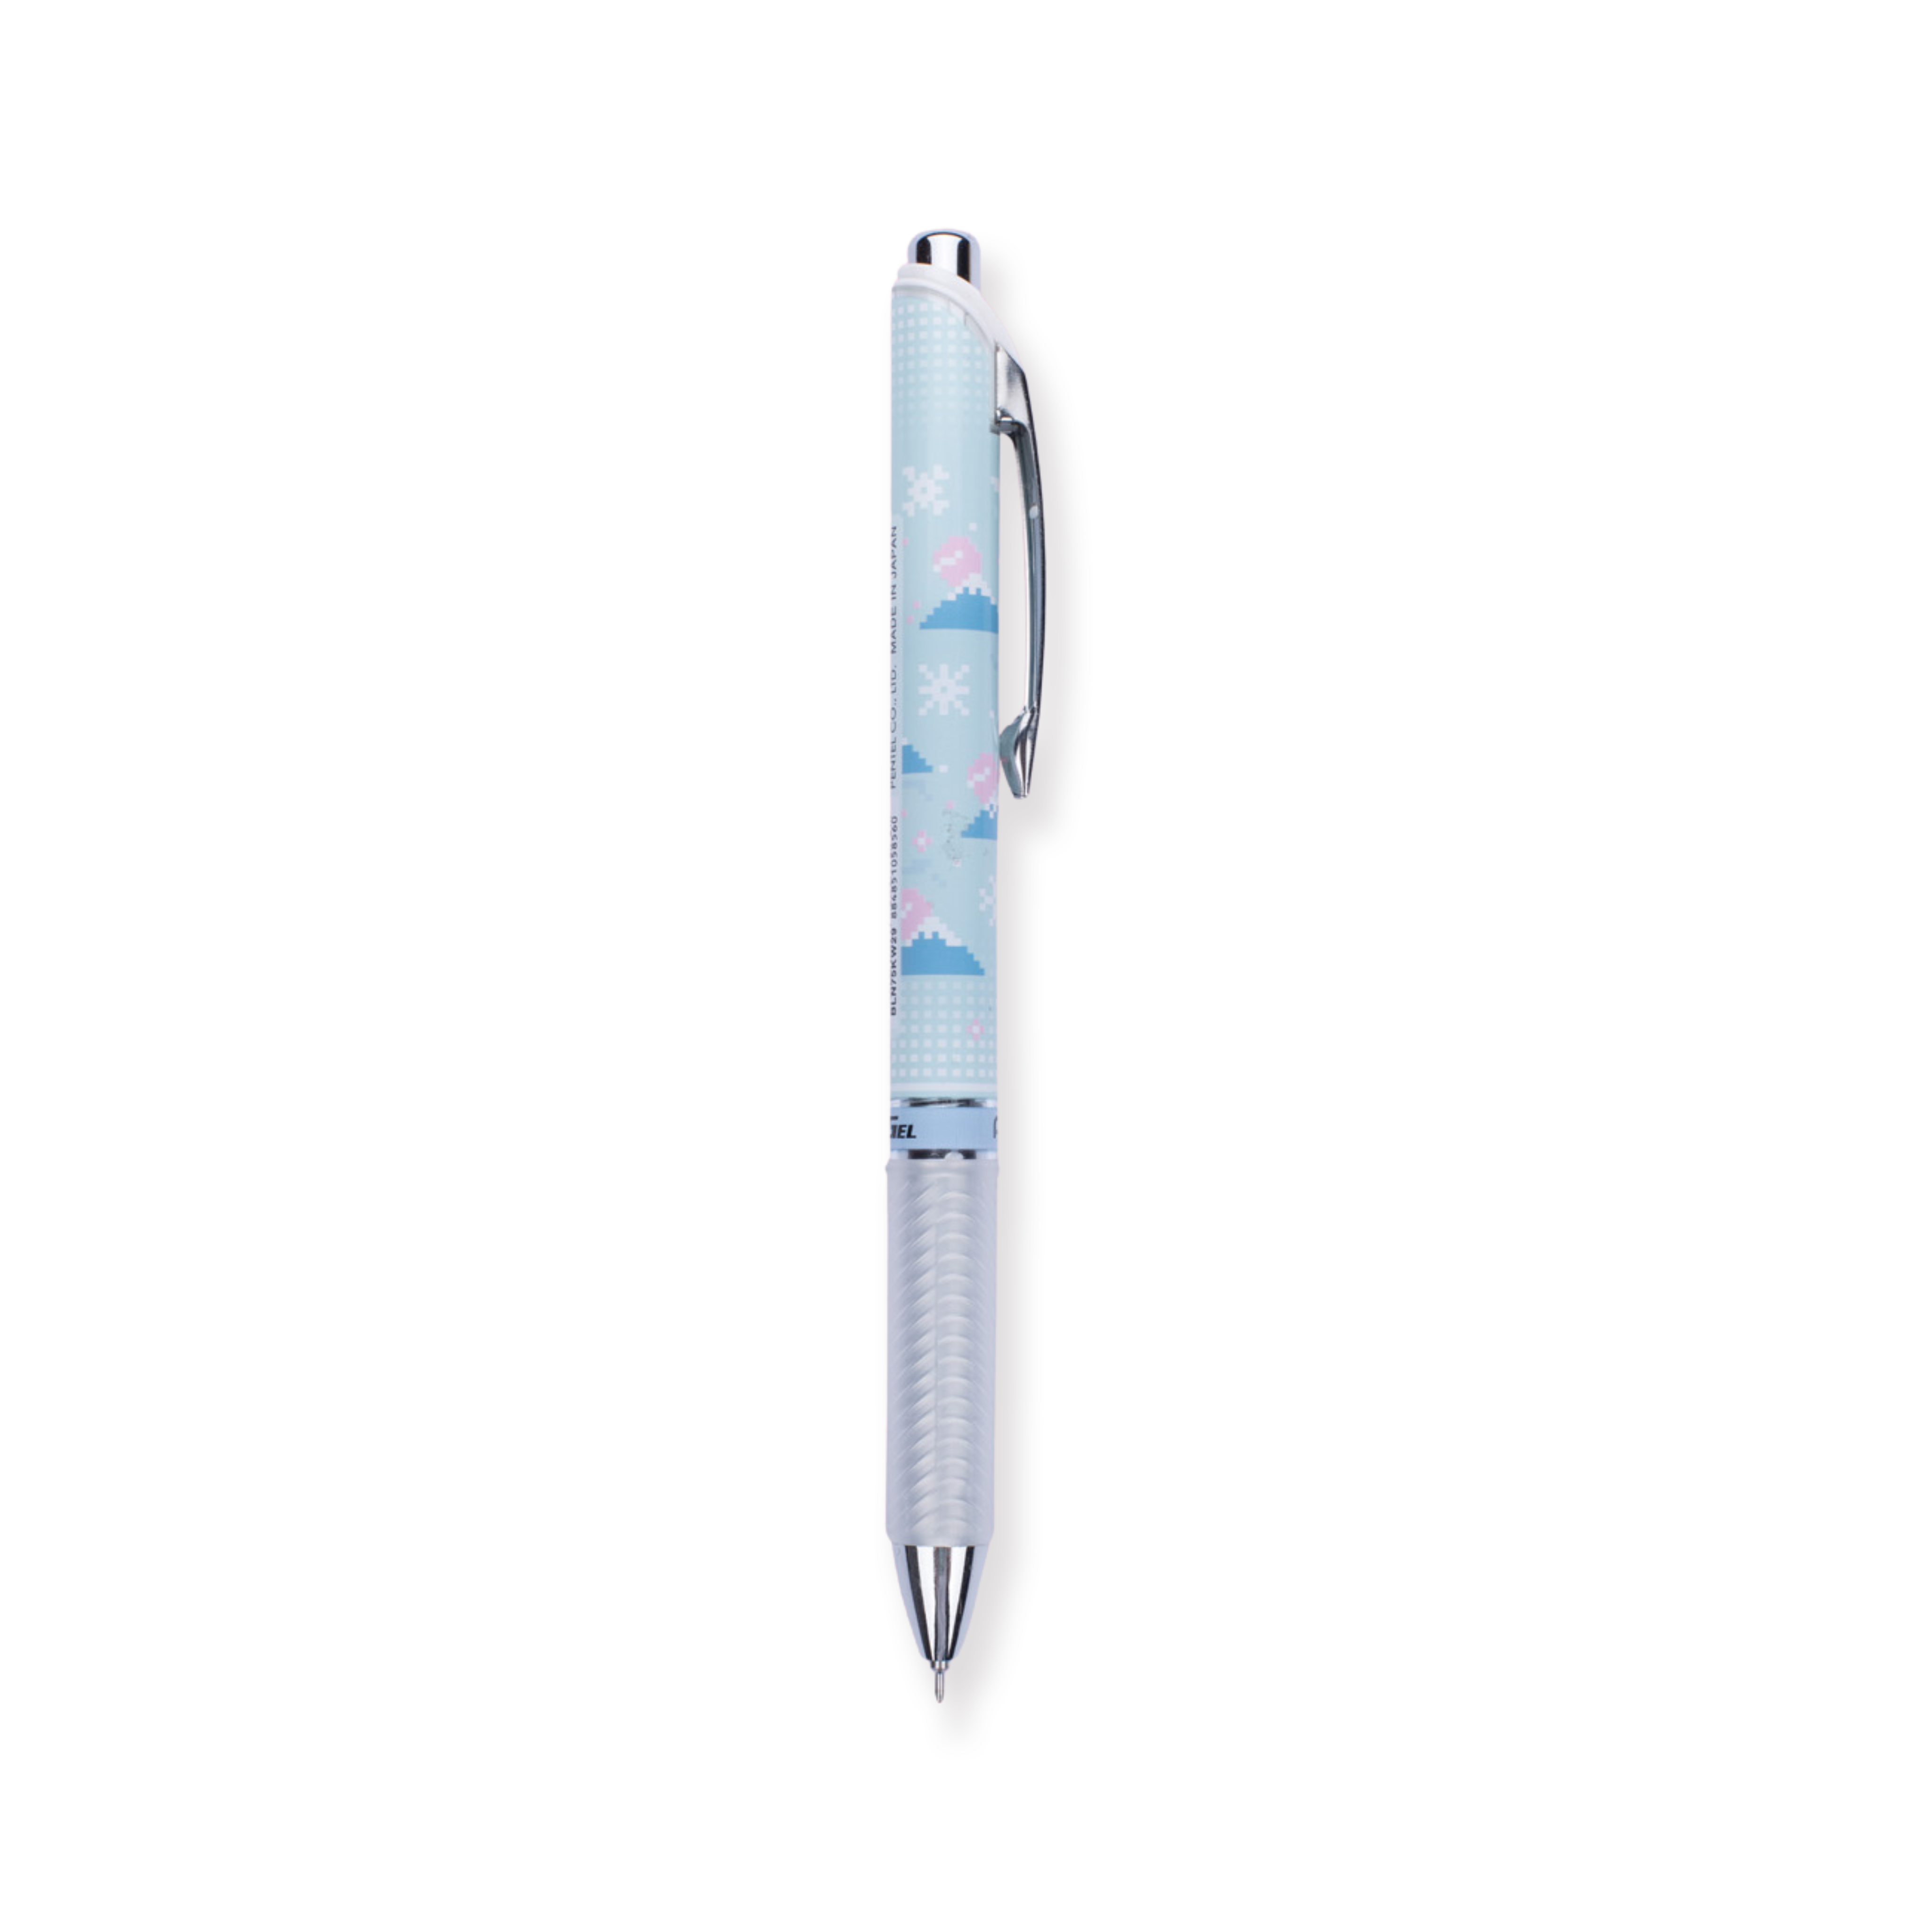 Pentel Edición Limitada Energel Kawaii +5 Bolígrafo Roller de Gel Retráctil - Monte Fuji